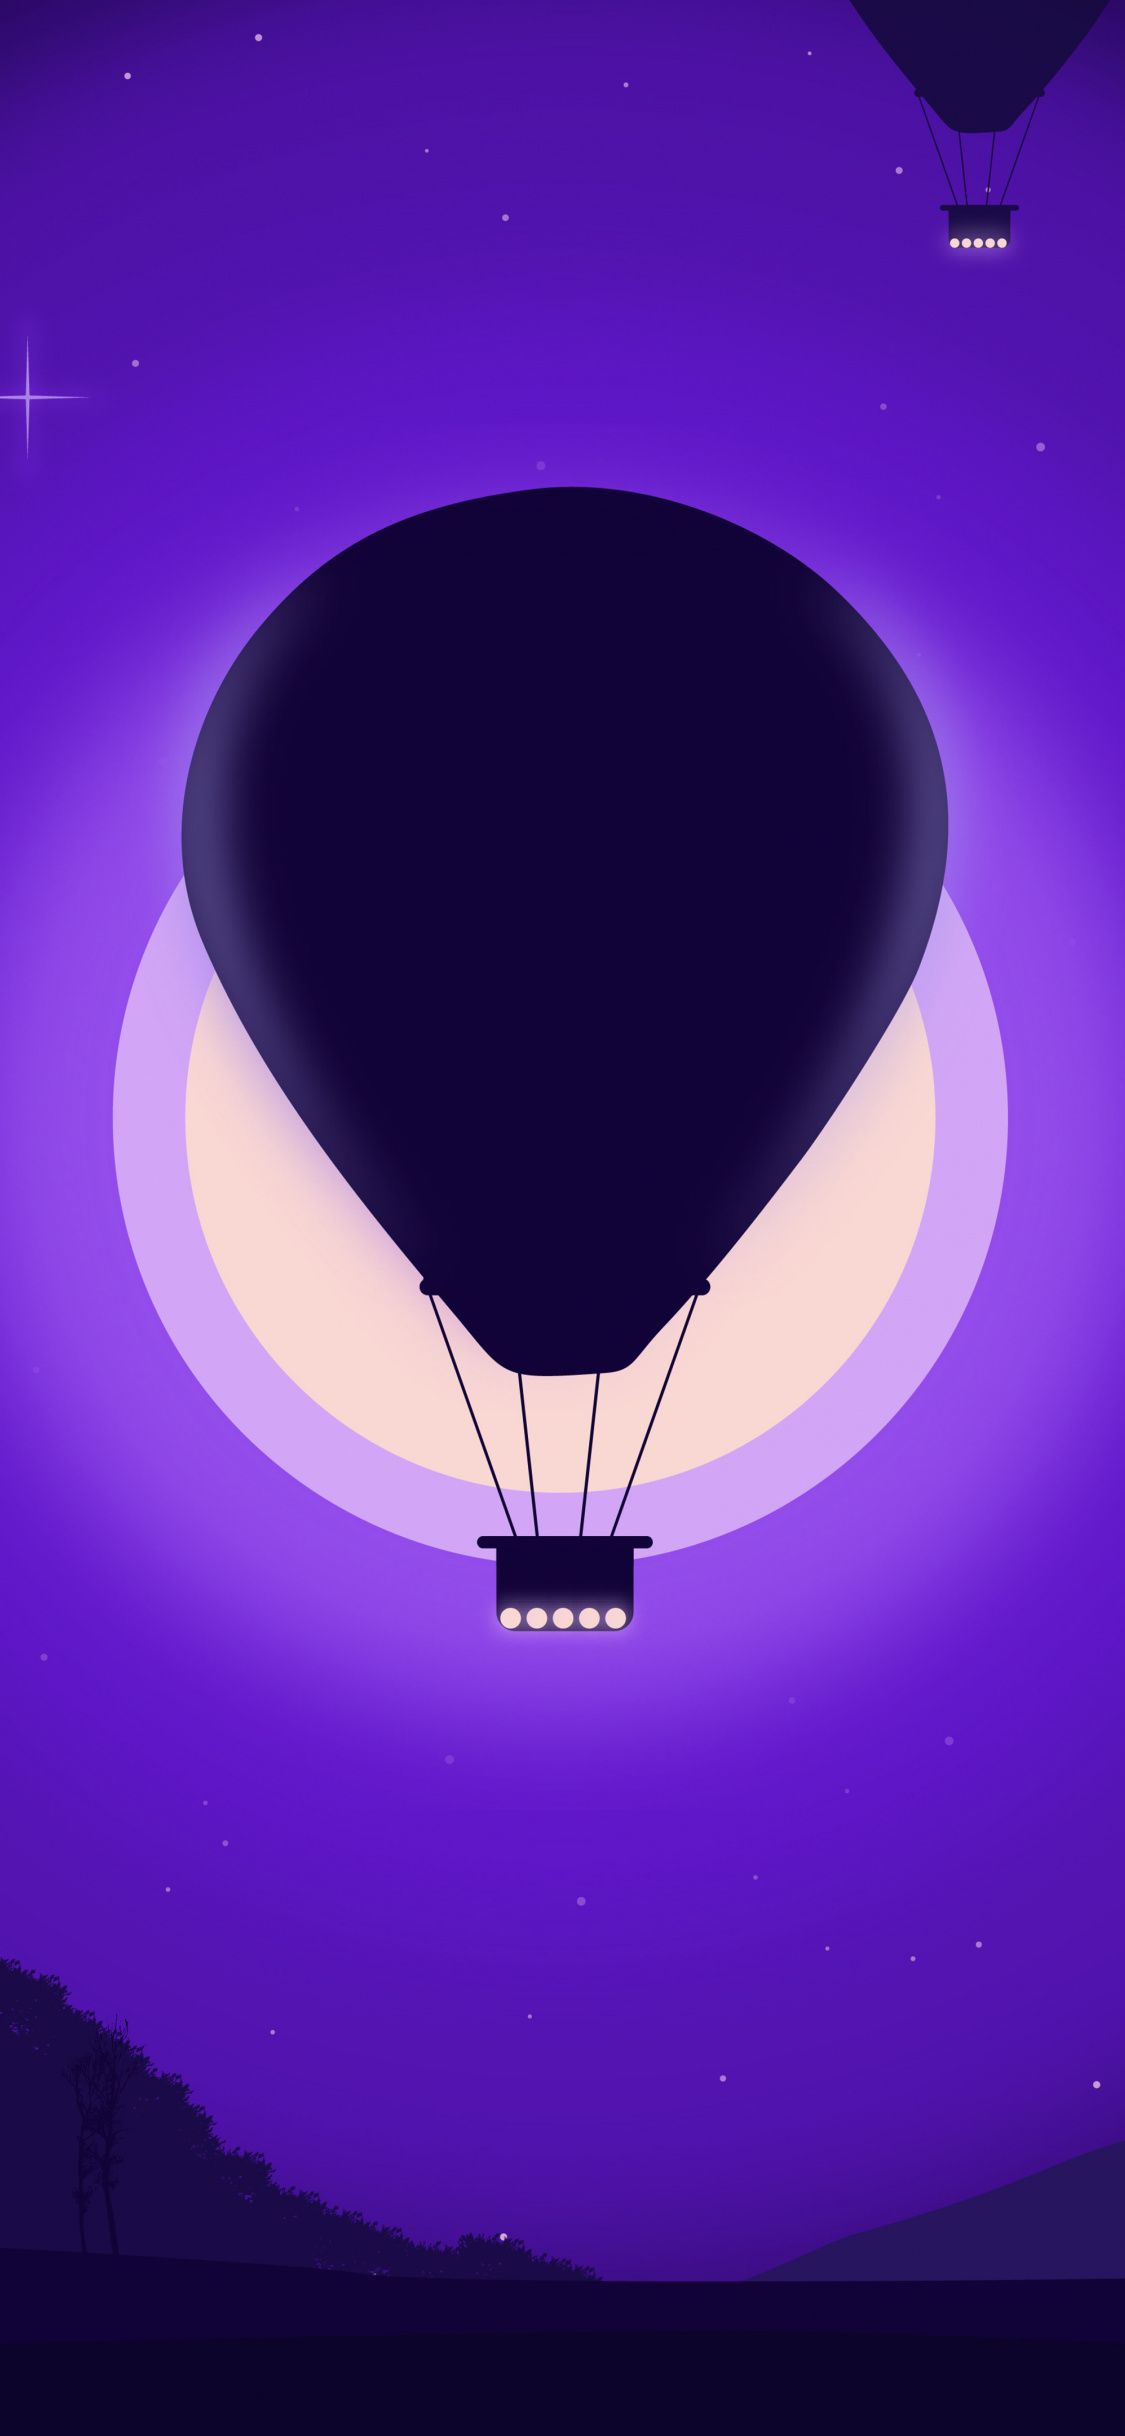 Hot Air Balloon Purple Dark Silhouette Wallpaper